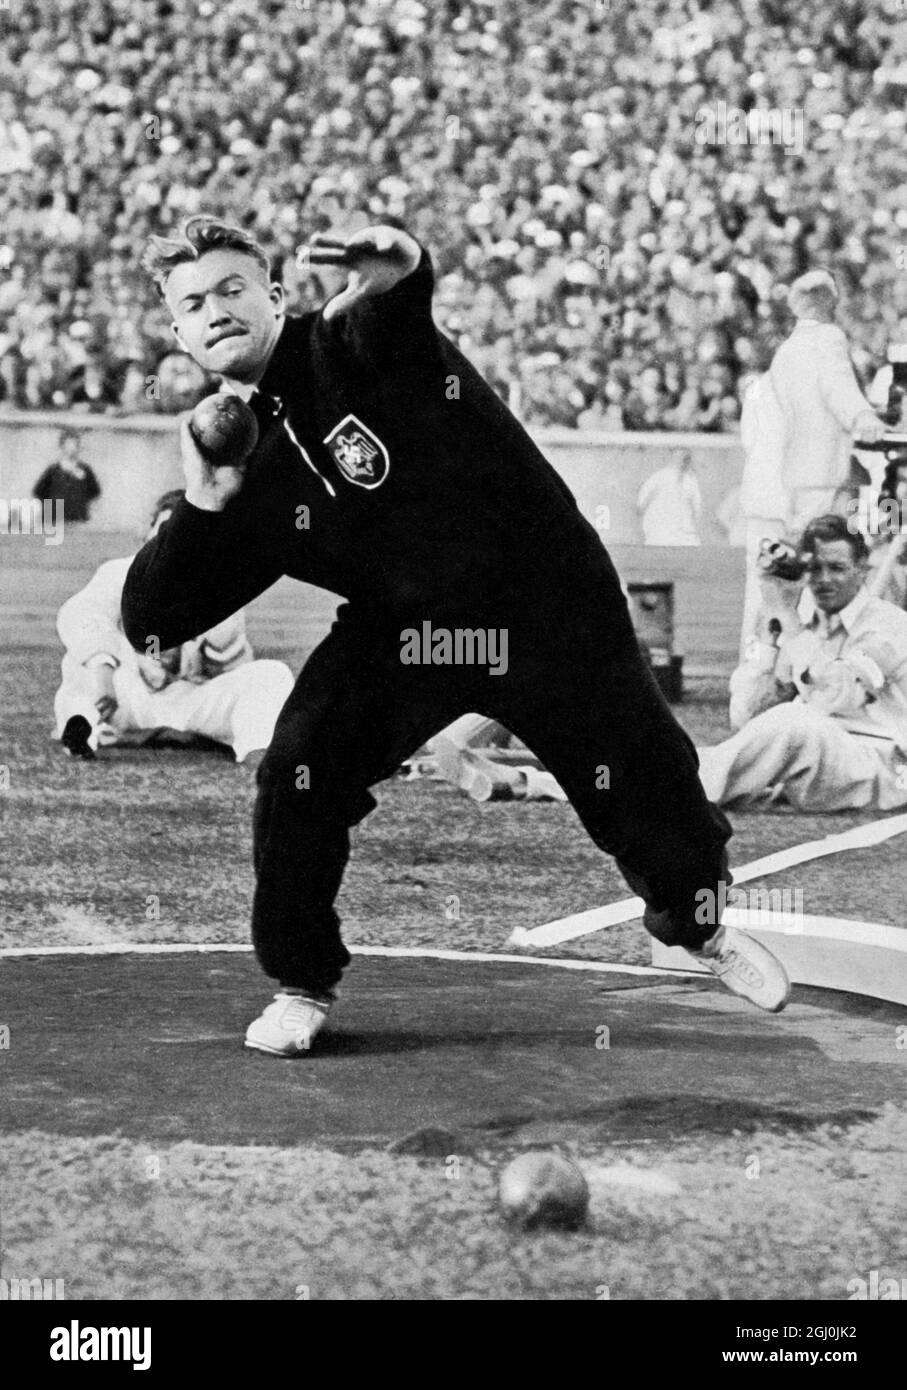 Olympia 1936, Berlin - Hans Woellke (Deutschland) triumphierte mit 16,20 Metern im Schuss und machte damit einen neuen olympischen Rekord. (Hans Woellke siegte mit 16,20 m im Kugelstossen und zielte damit einen neuen olympischen rekord.) ©TopFoto Stockfoto